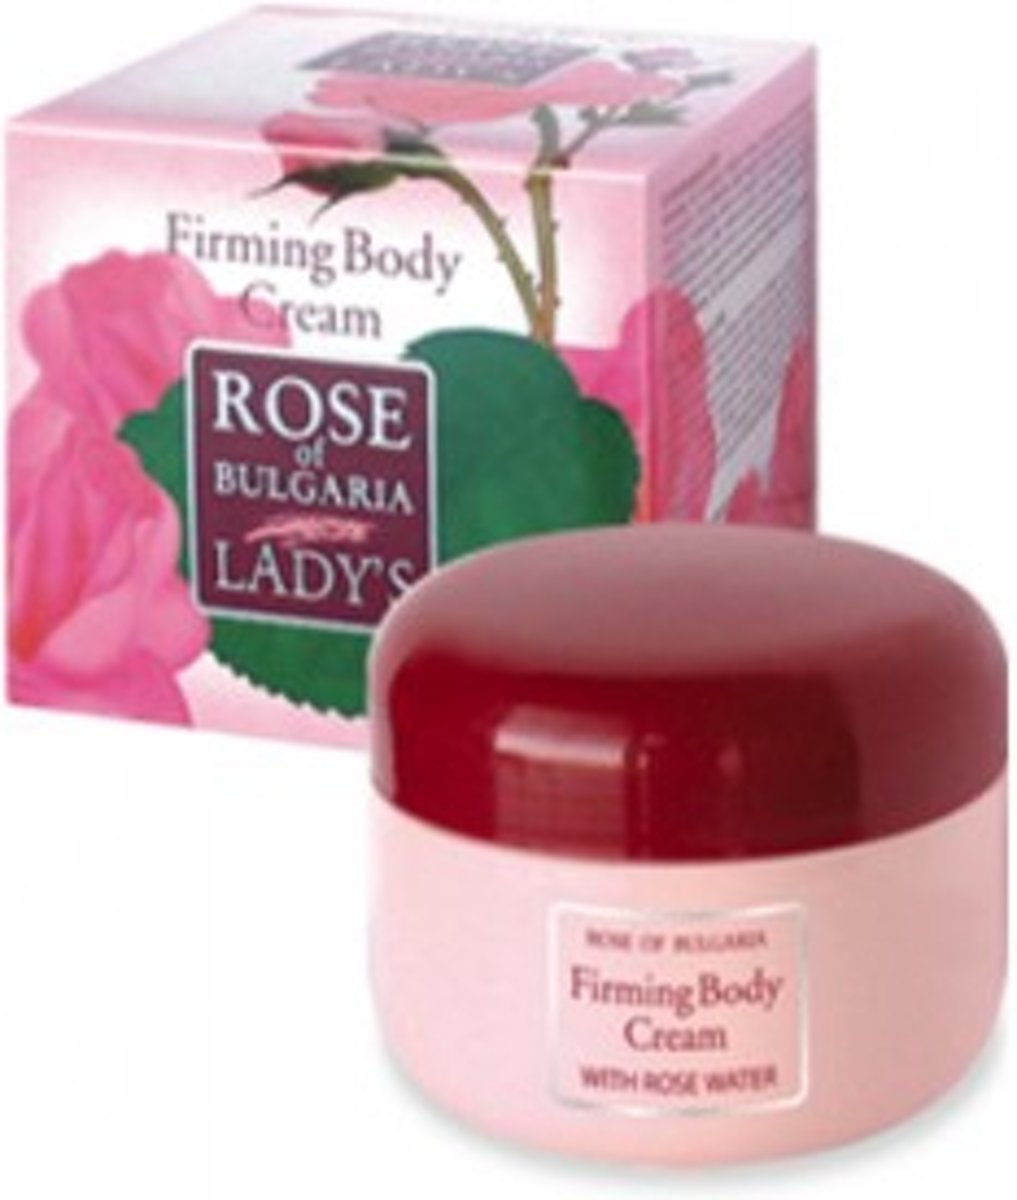 Foto van Firming Body Cream "Rose of Bulgaria"